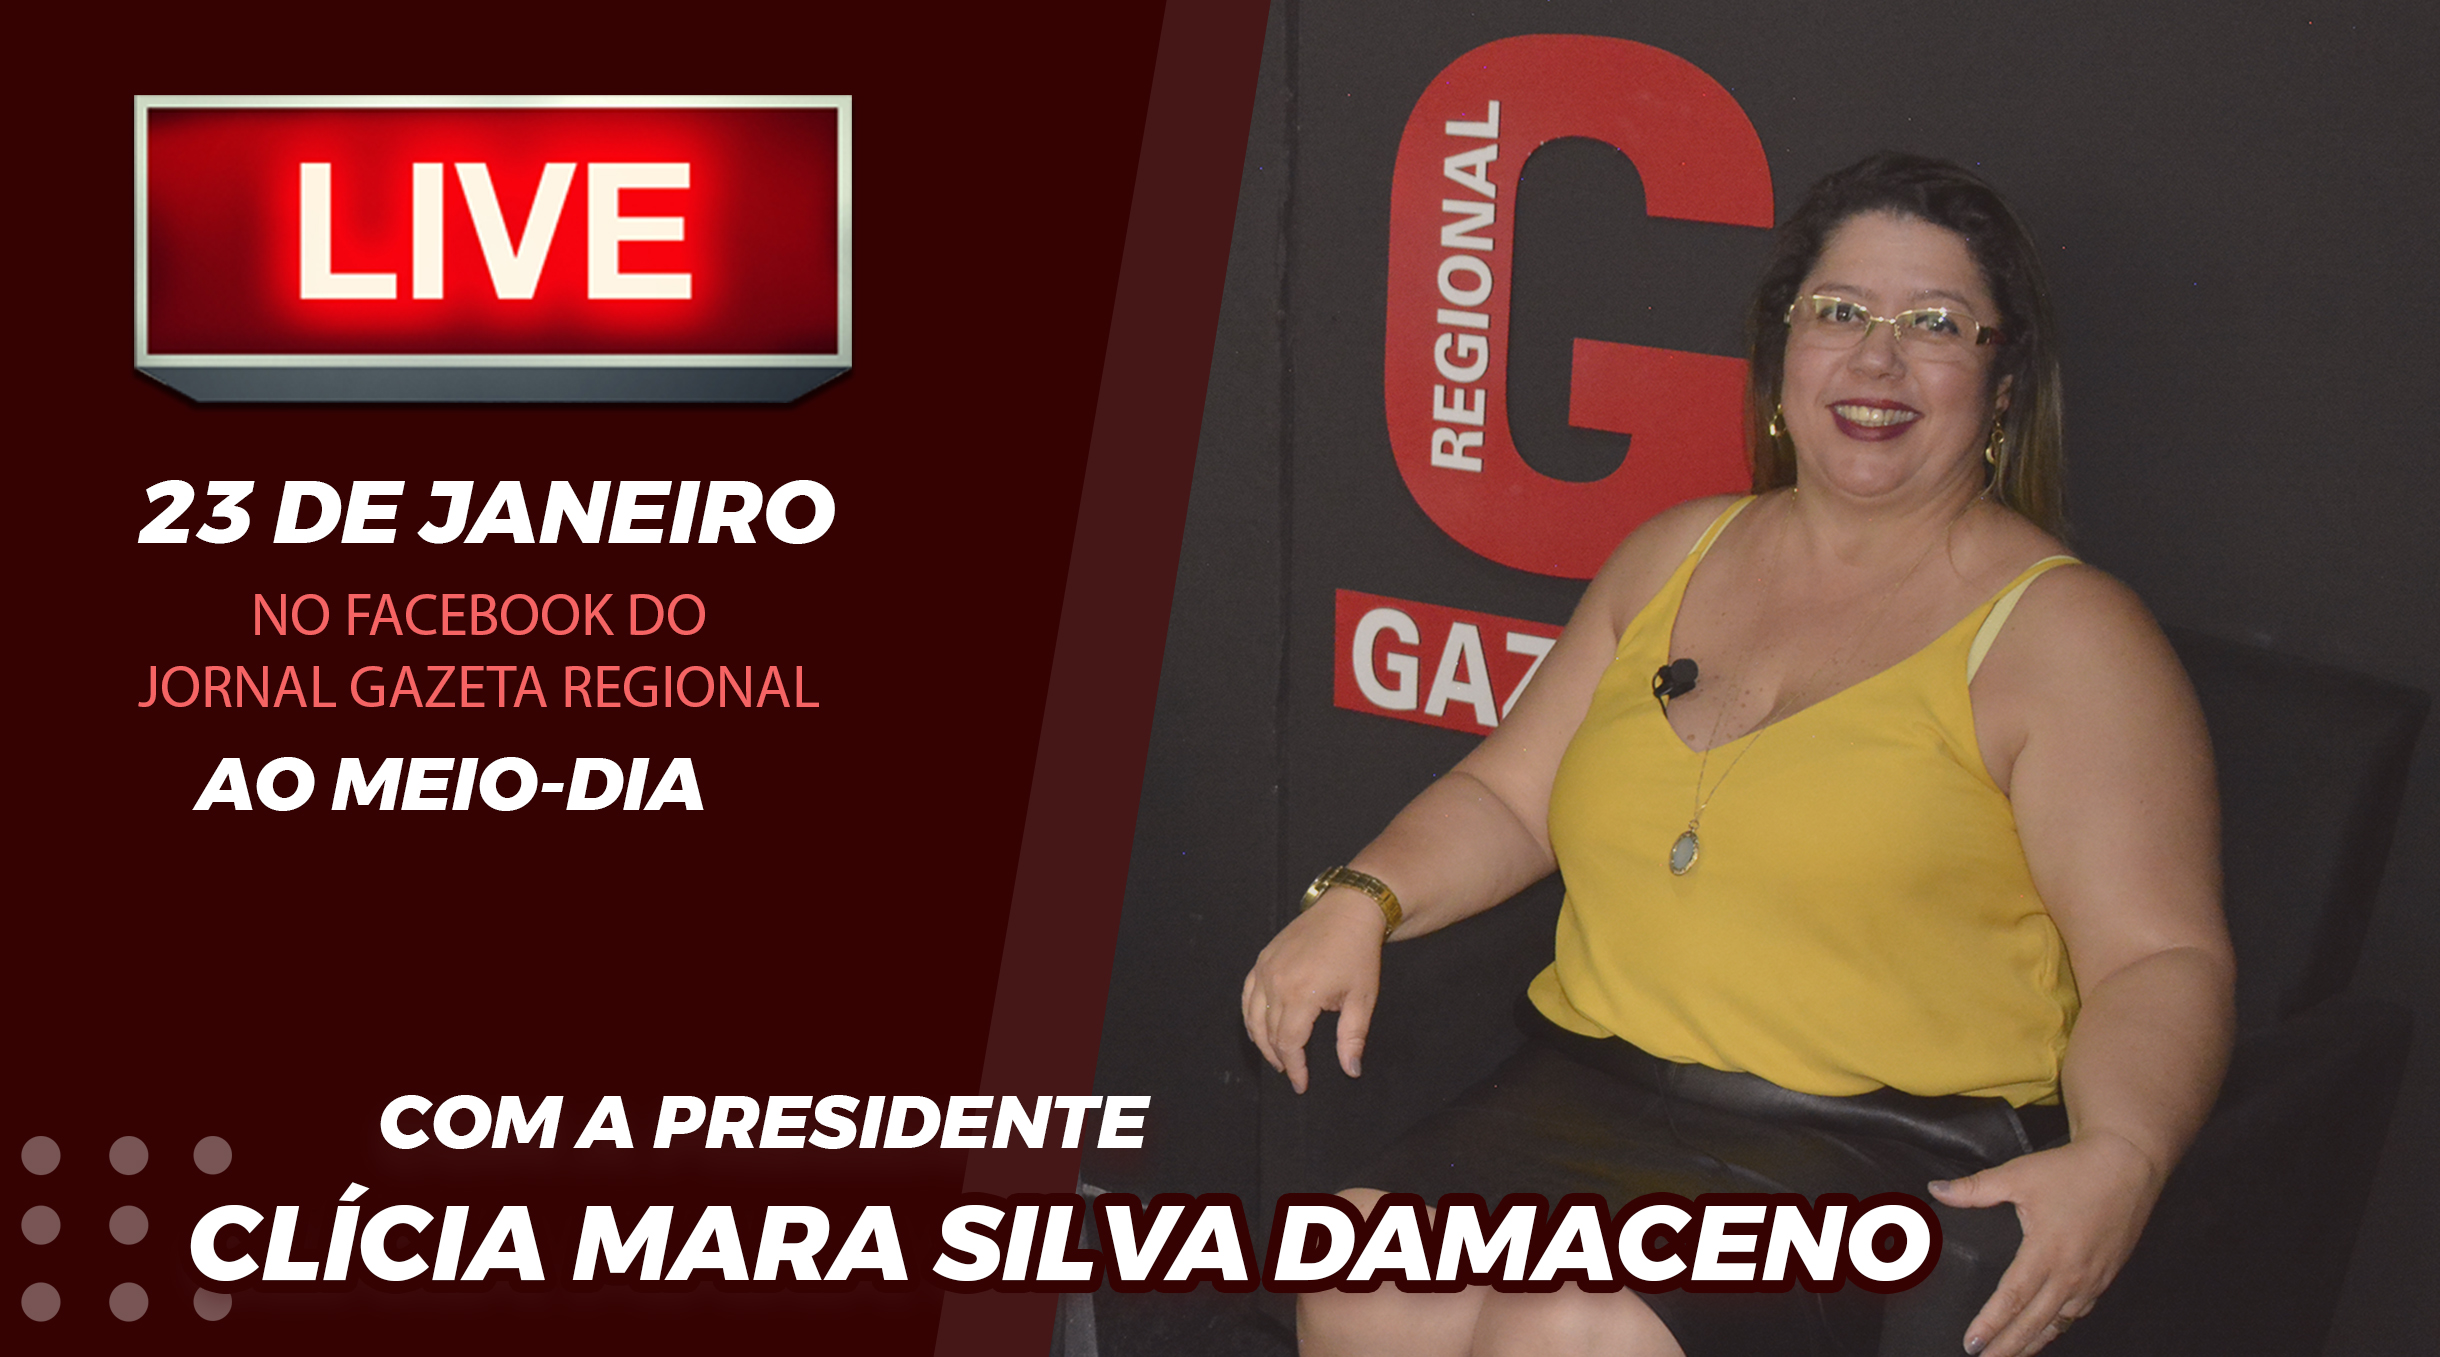 Presidente Clícia estará presente em live do jornal Gazeta Regional no dia 23, ao meio-dia!